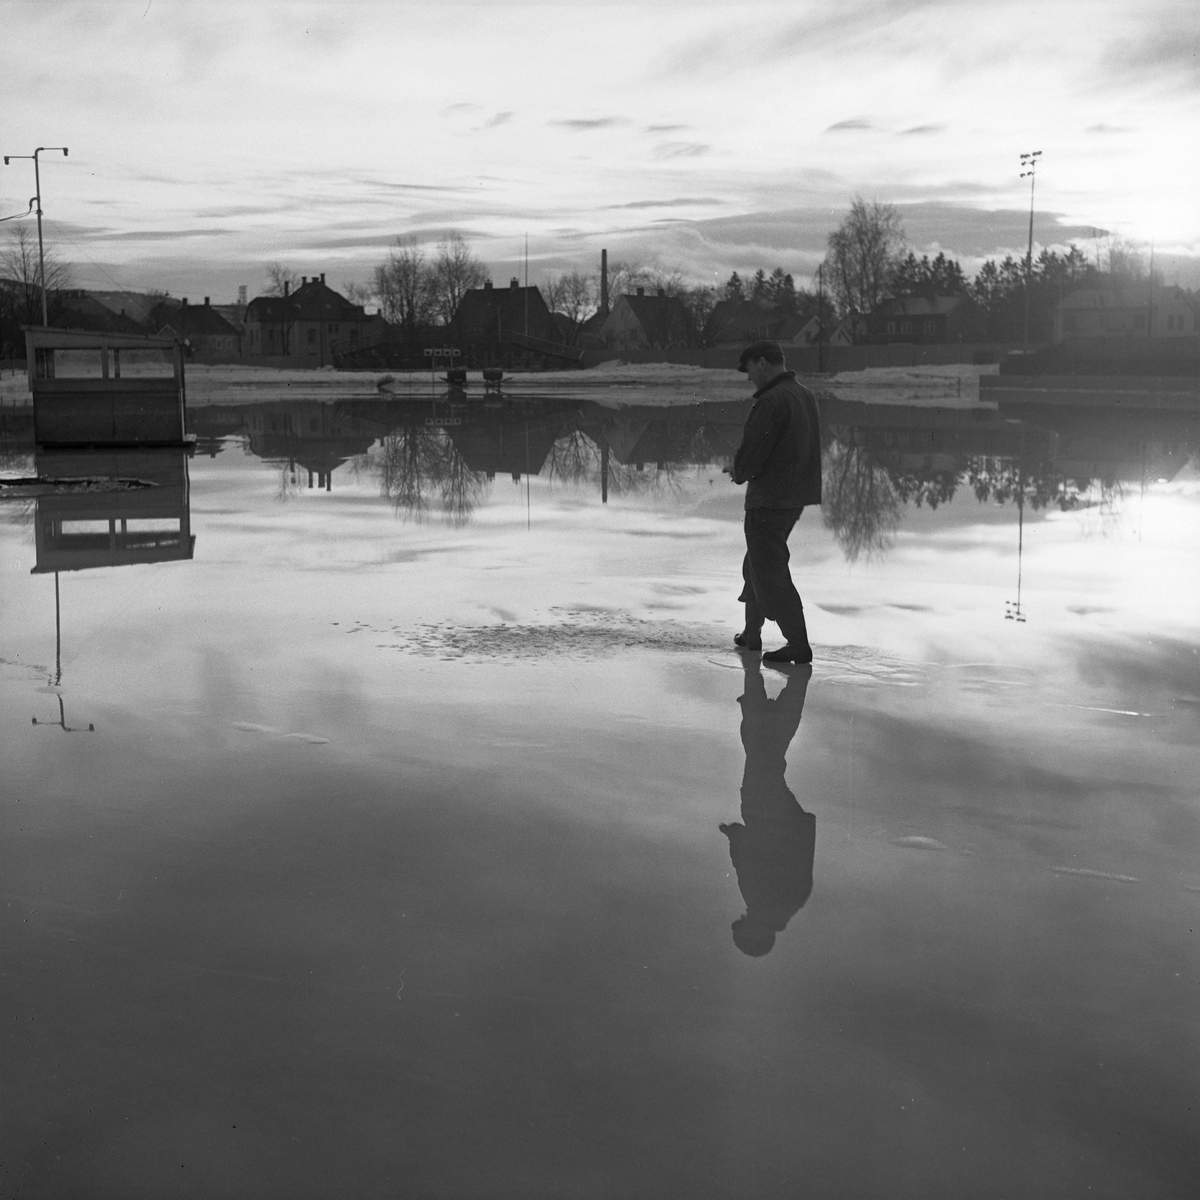 Oversvømmelse på Stadion foran landskampen. Banemester Thingstad studerer forholdene